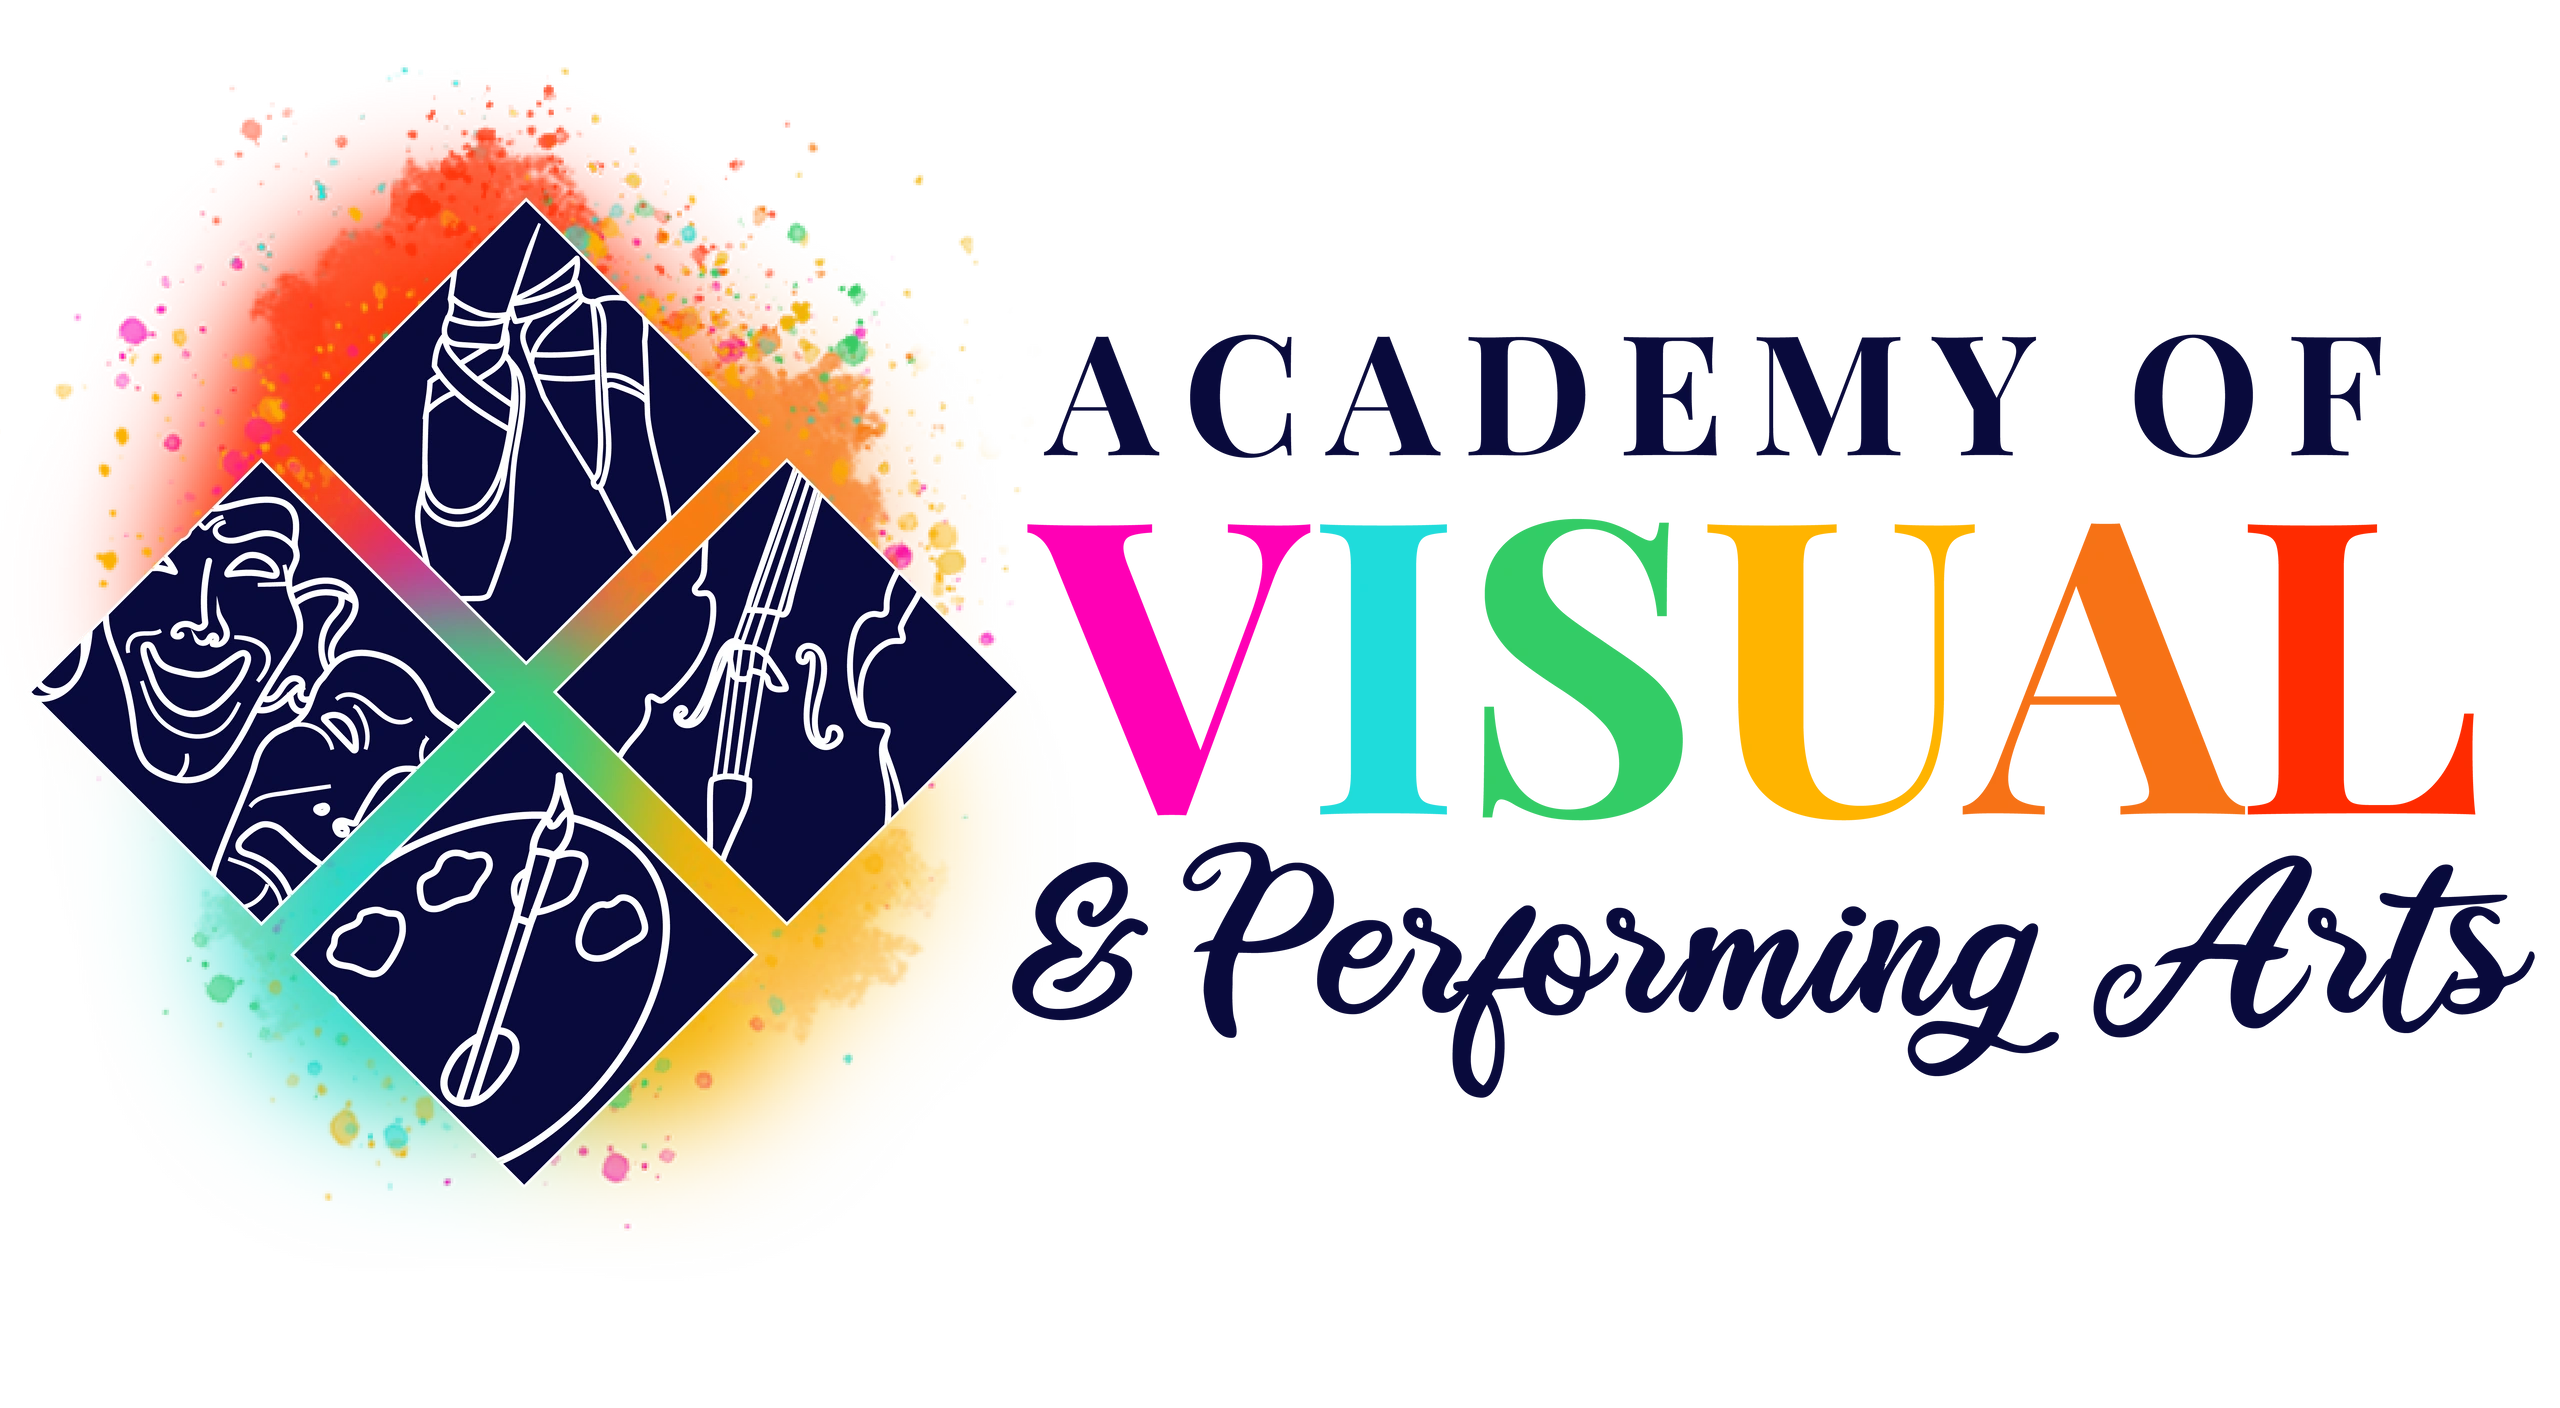 visual arts logo